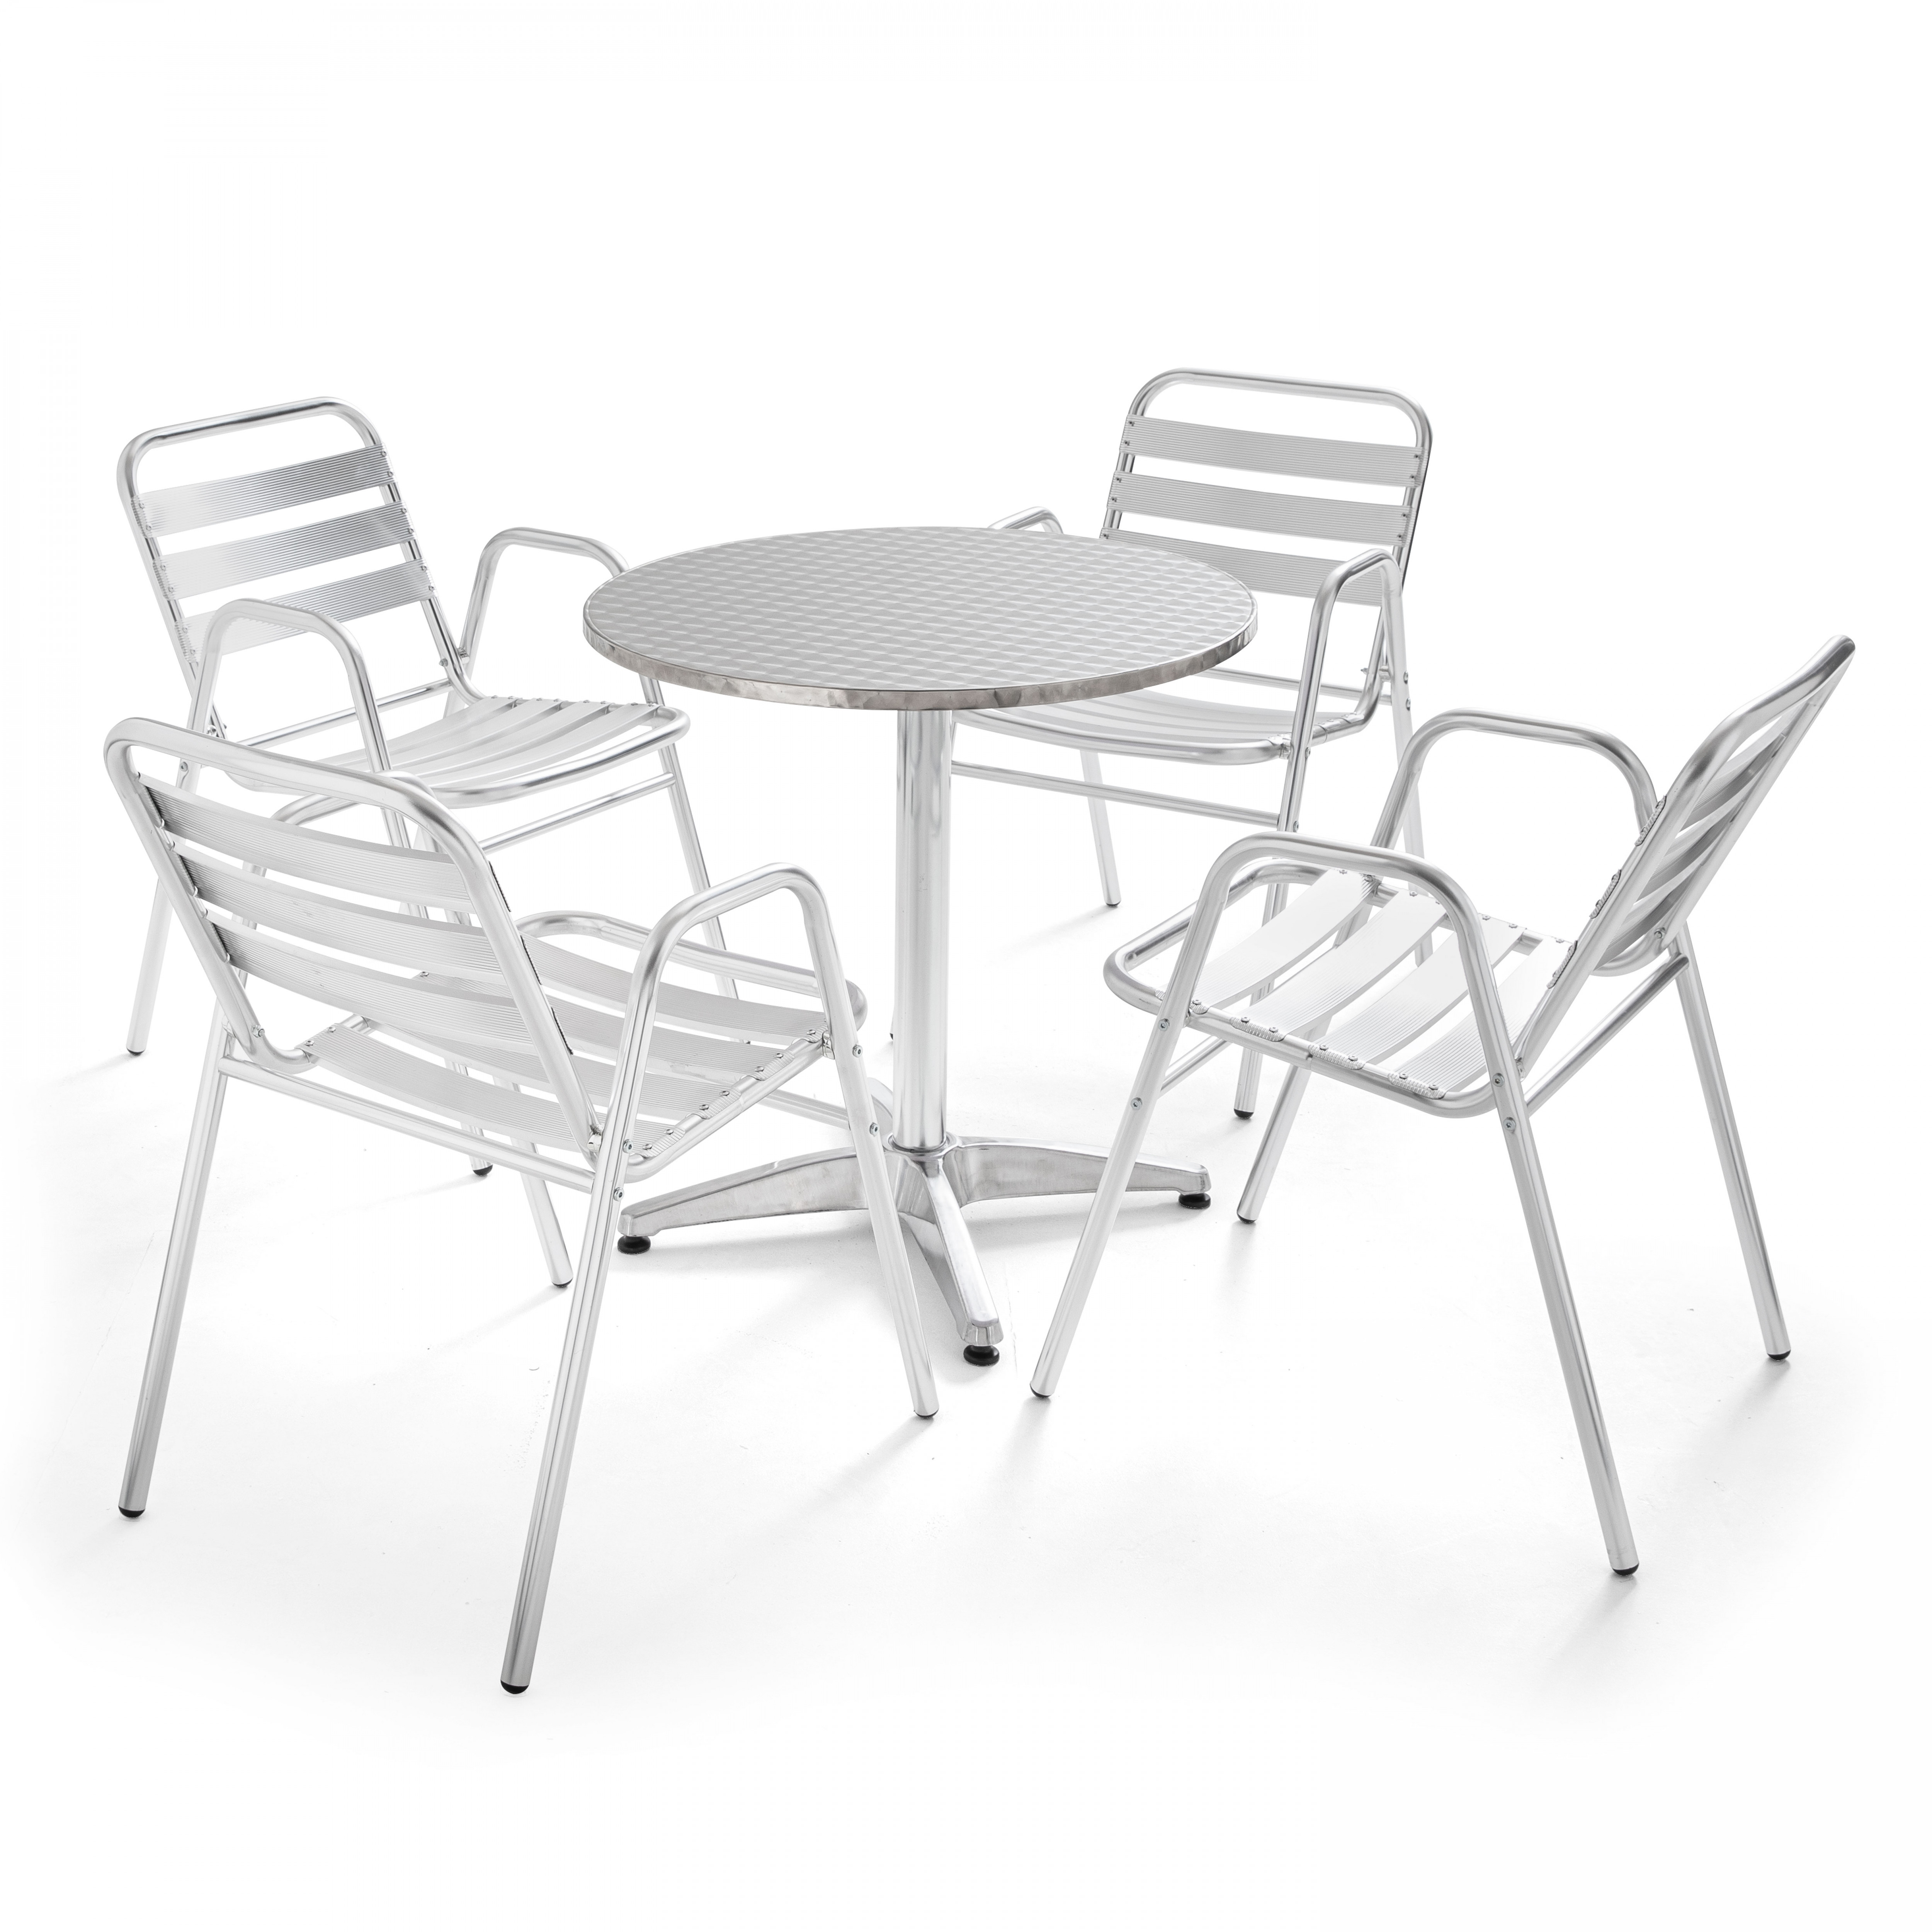 Table de jardin ronde en aluminium et 4 chaises avec accoudoirs